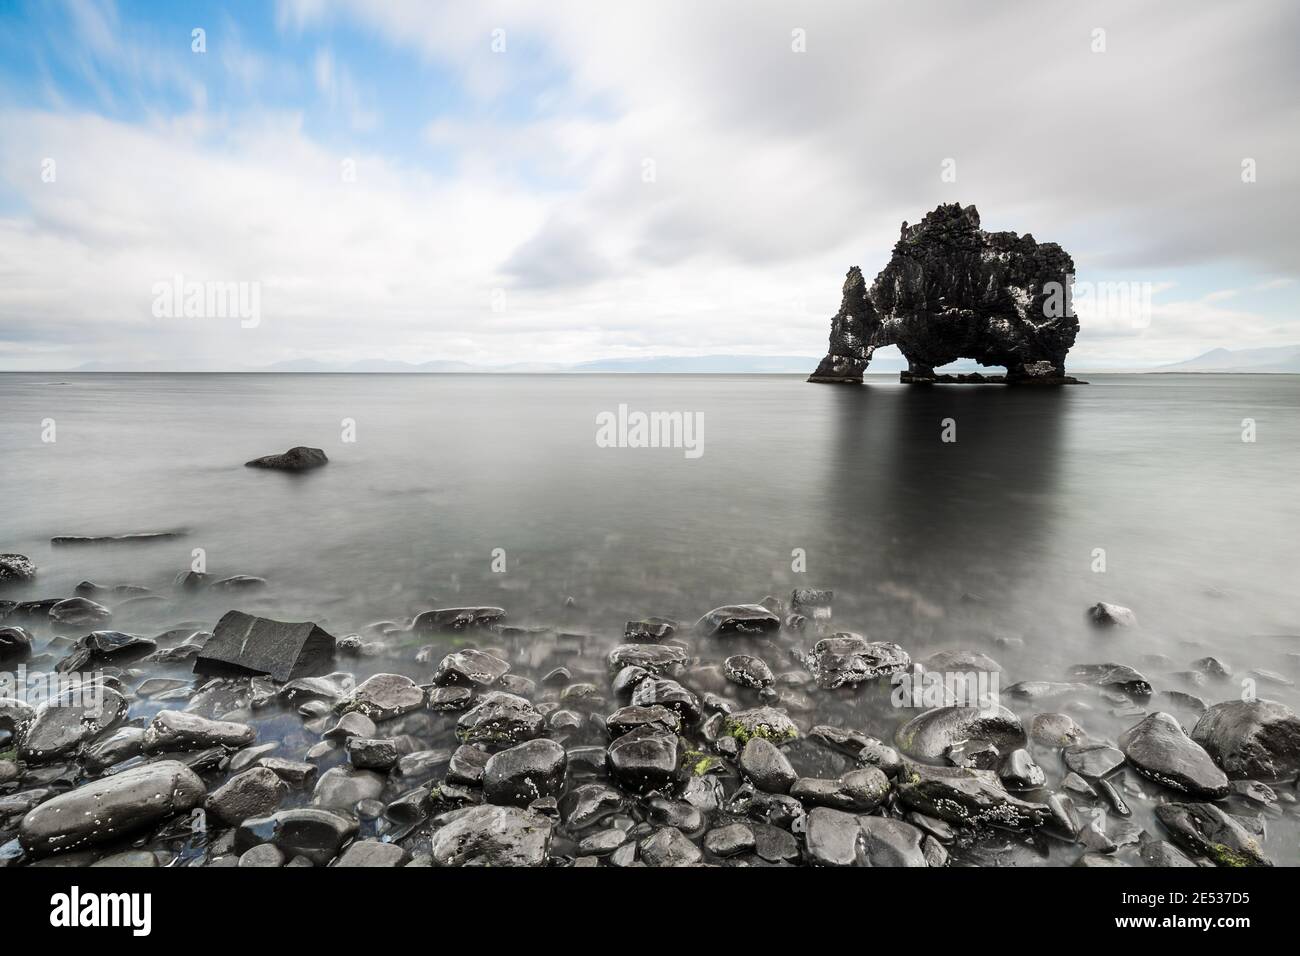 Paisaje islandés con guijarros en primer plano y la formación de roca negra conocida como Dragón sediento en el fondo, bajo un cielo nublado Foto de stock